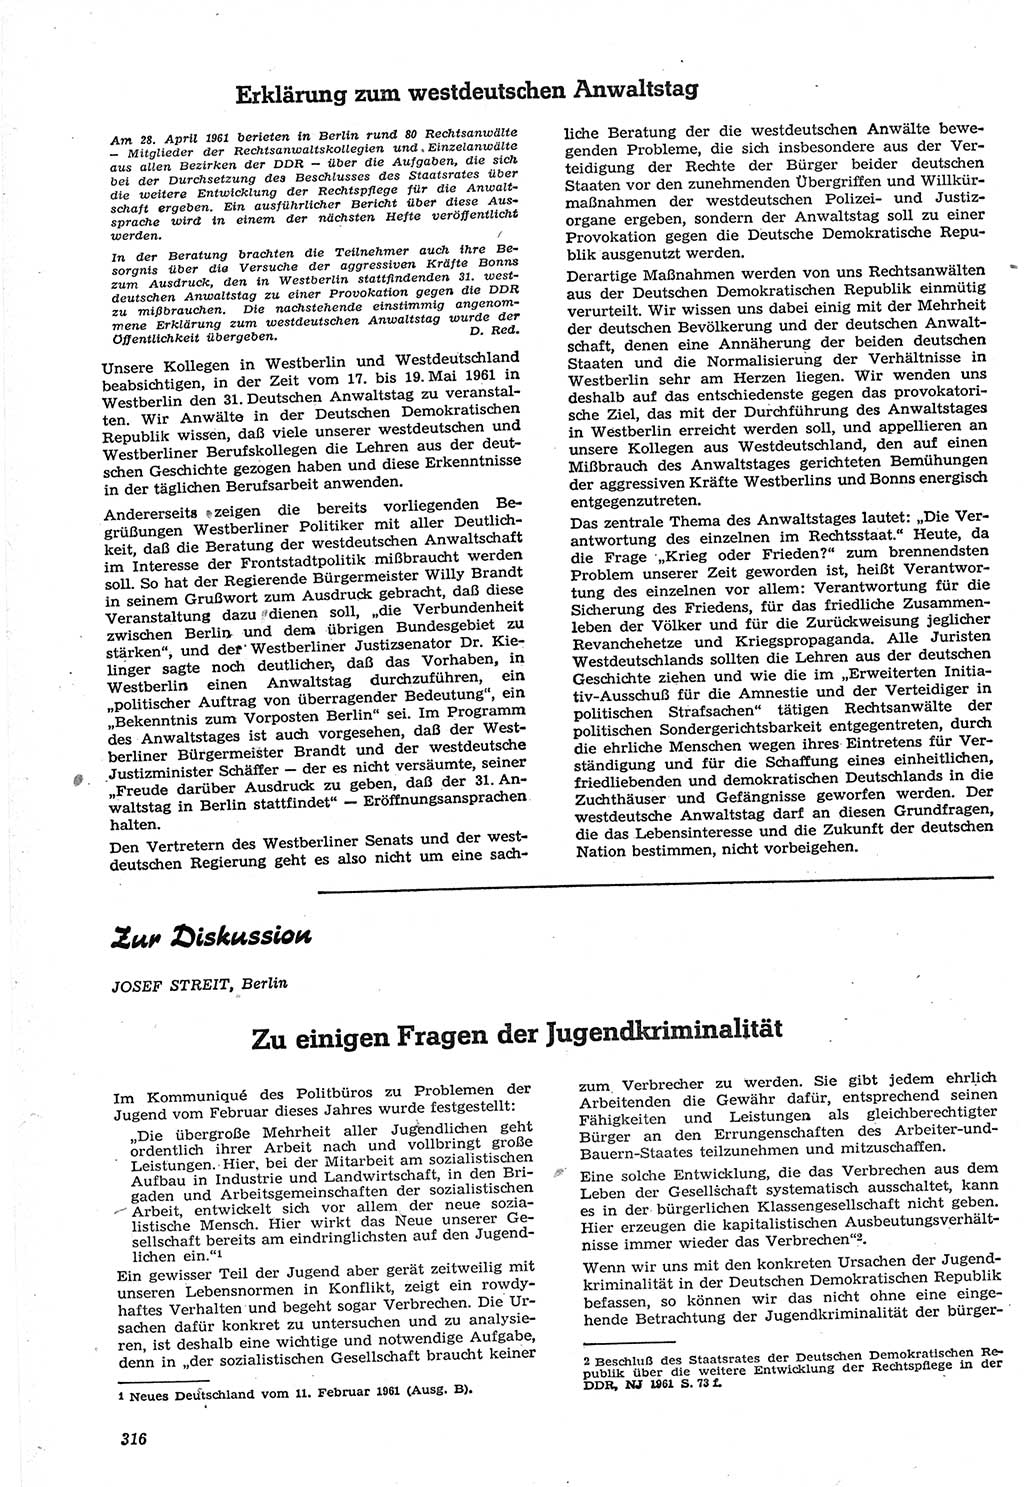 Neue Justiz (NJ), Zeitschrift für Recht und Rechtswissenschaft [Deutsche Demokratische Republik (DDR)], 15. Jahrgang 1961, Seite 316 (NJ DDR 1961, S. 316)